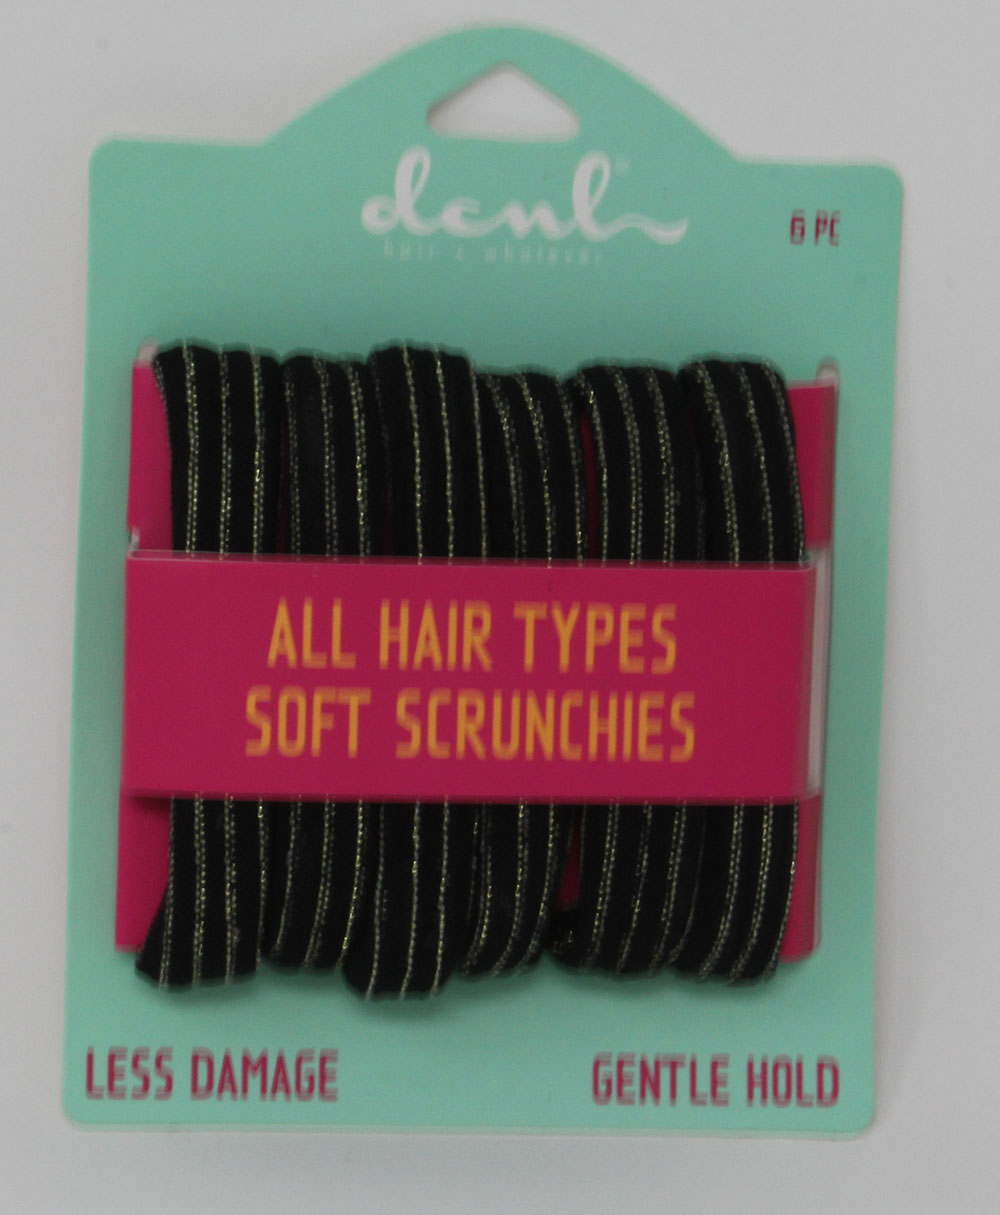 Black soft scrunchies with mylar